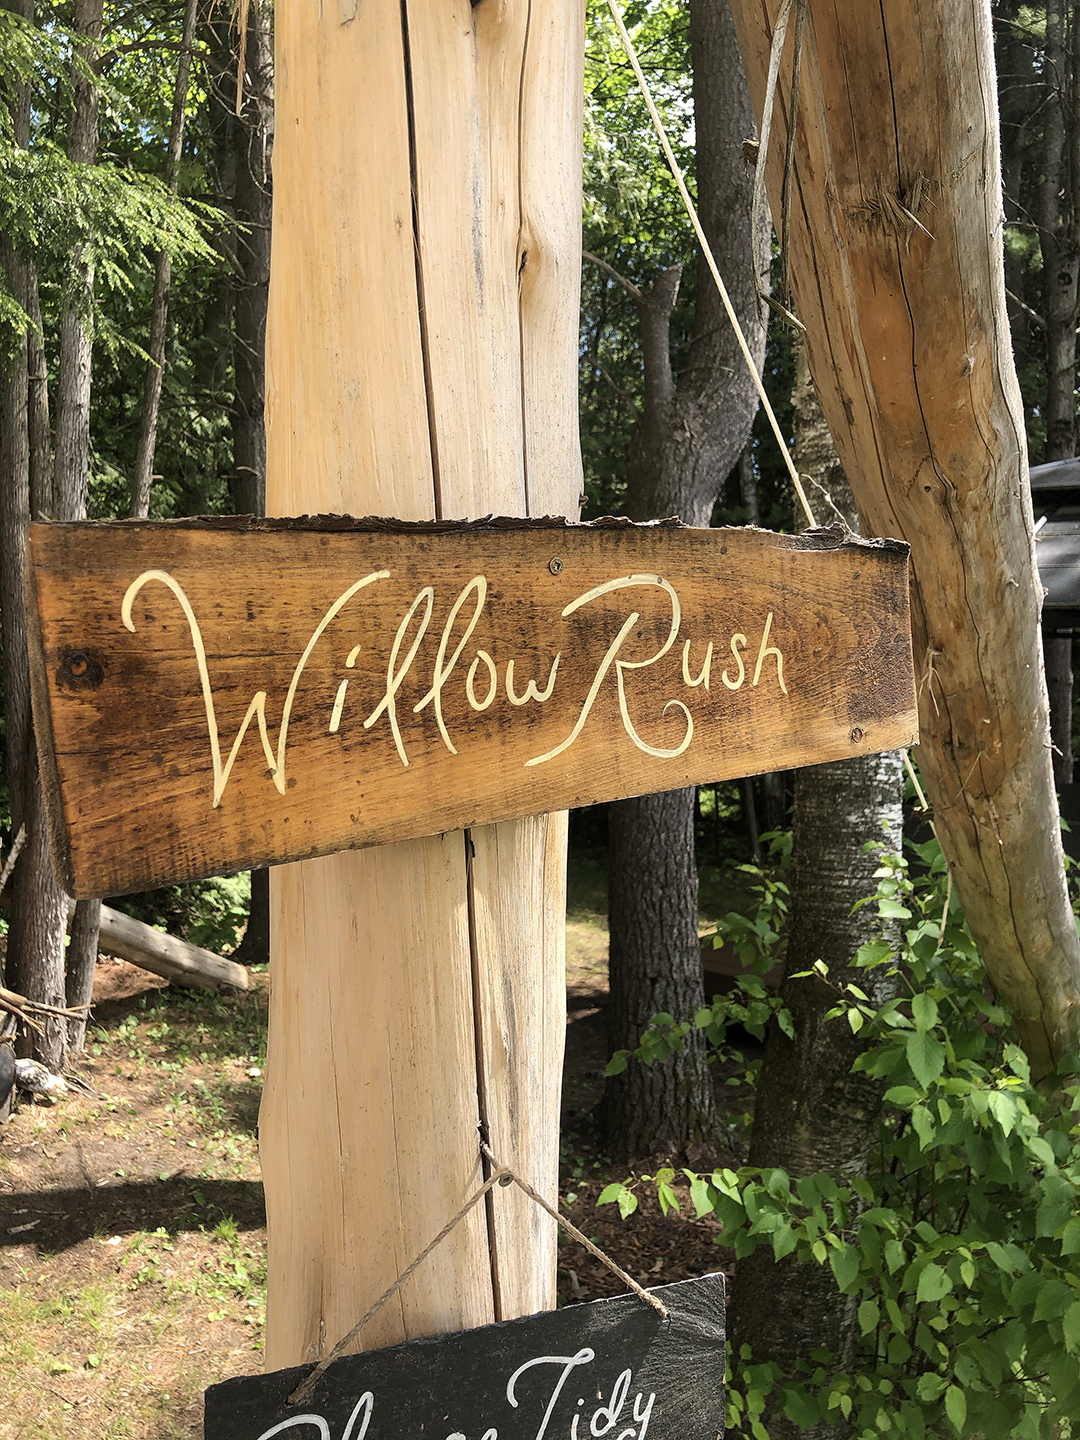 Willow Rush Safari Tent 